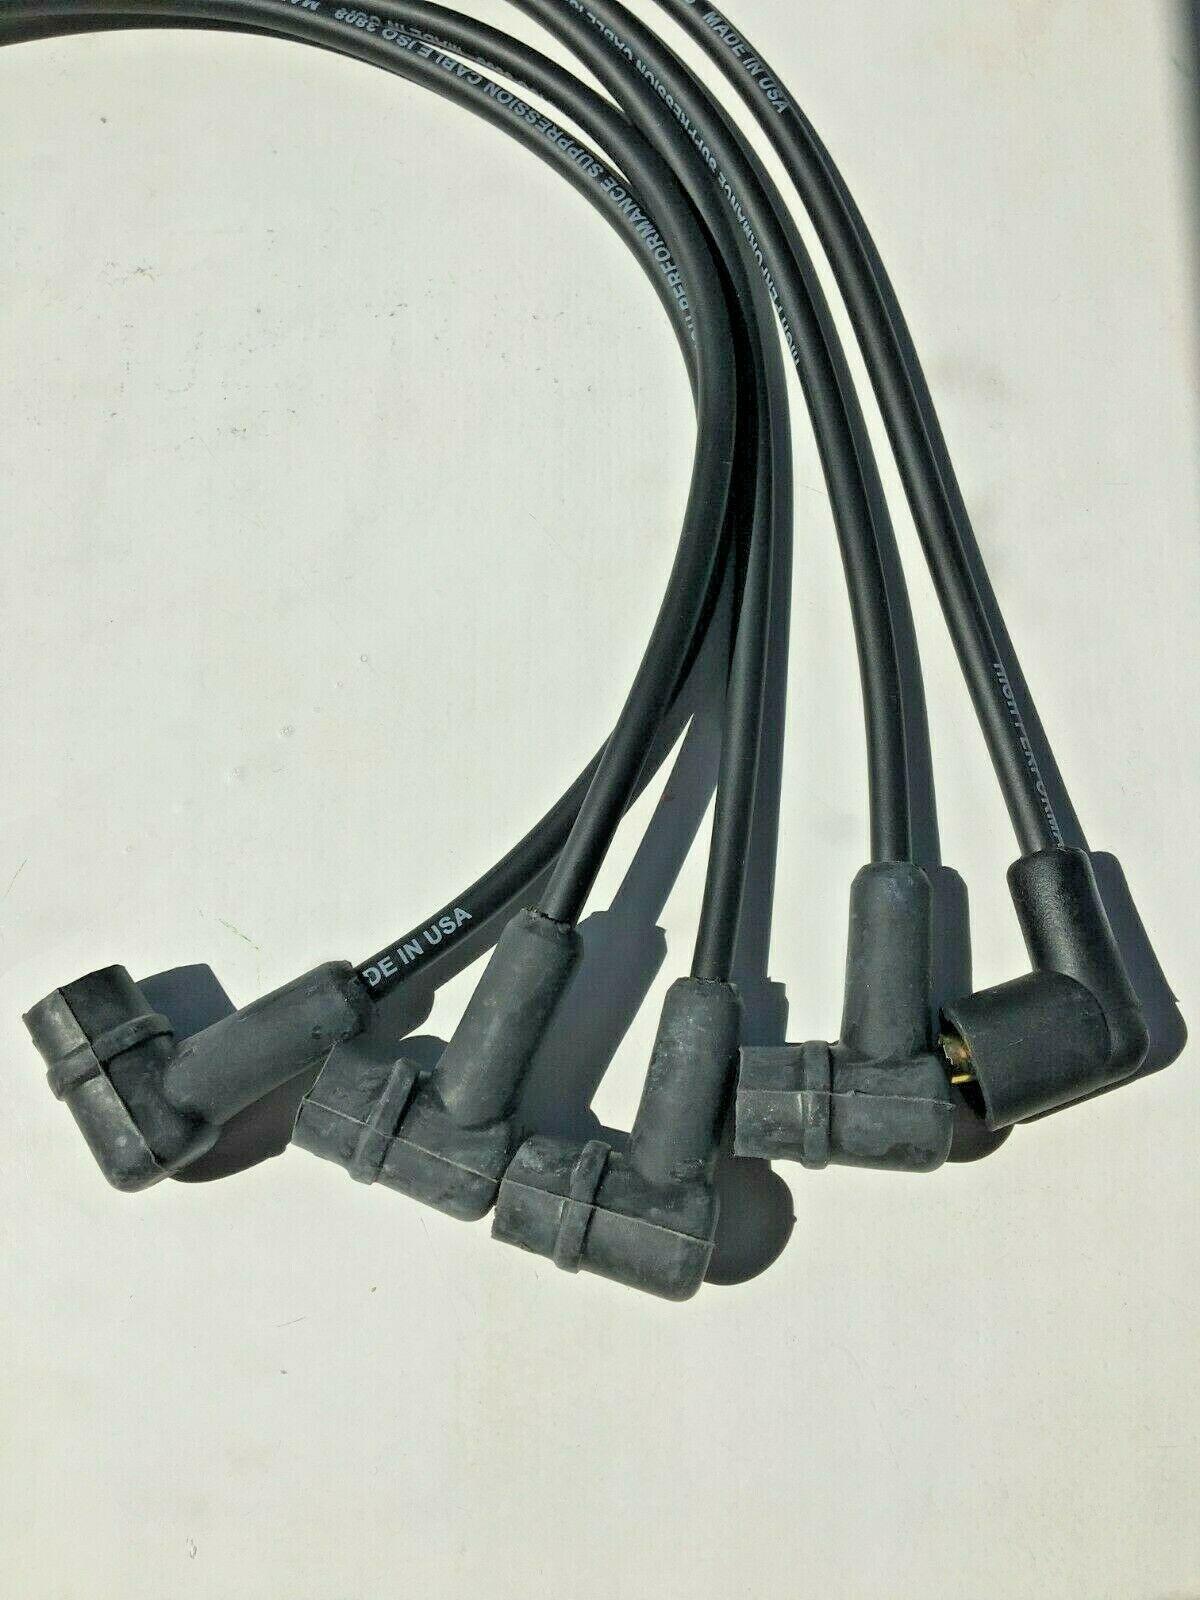 Austin Silicon Cable